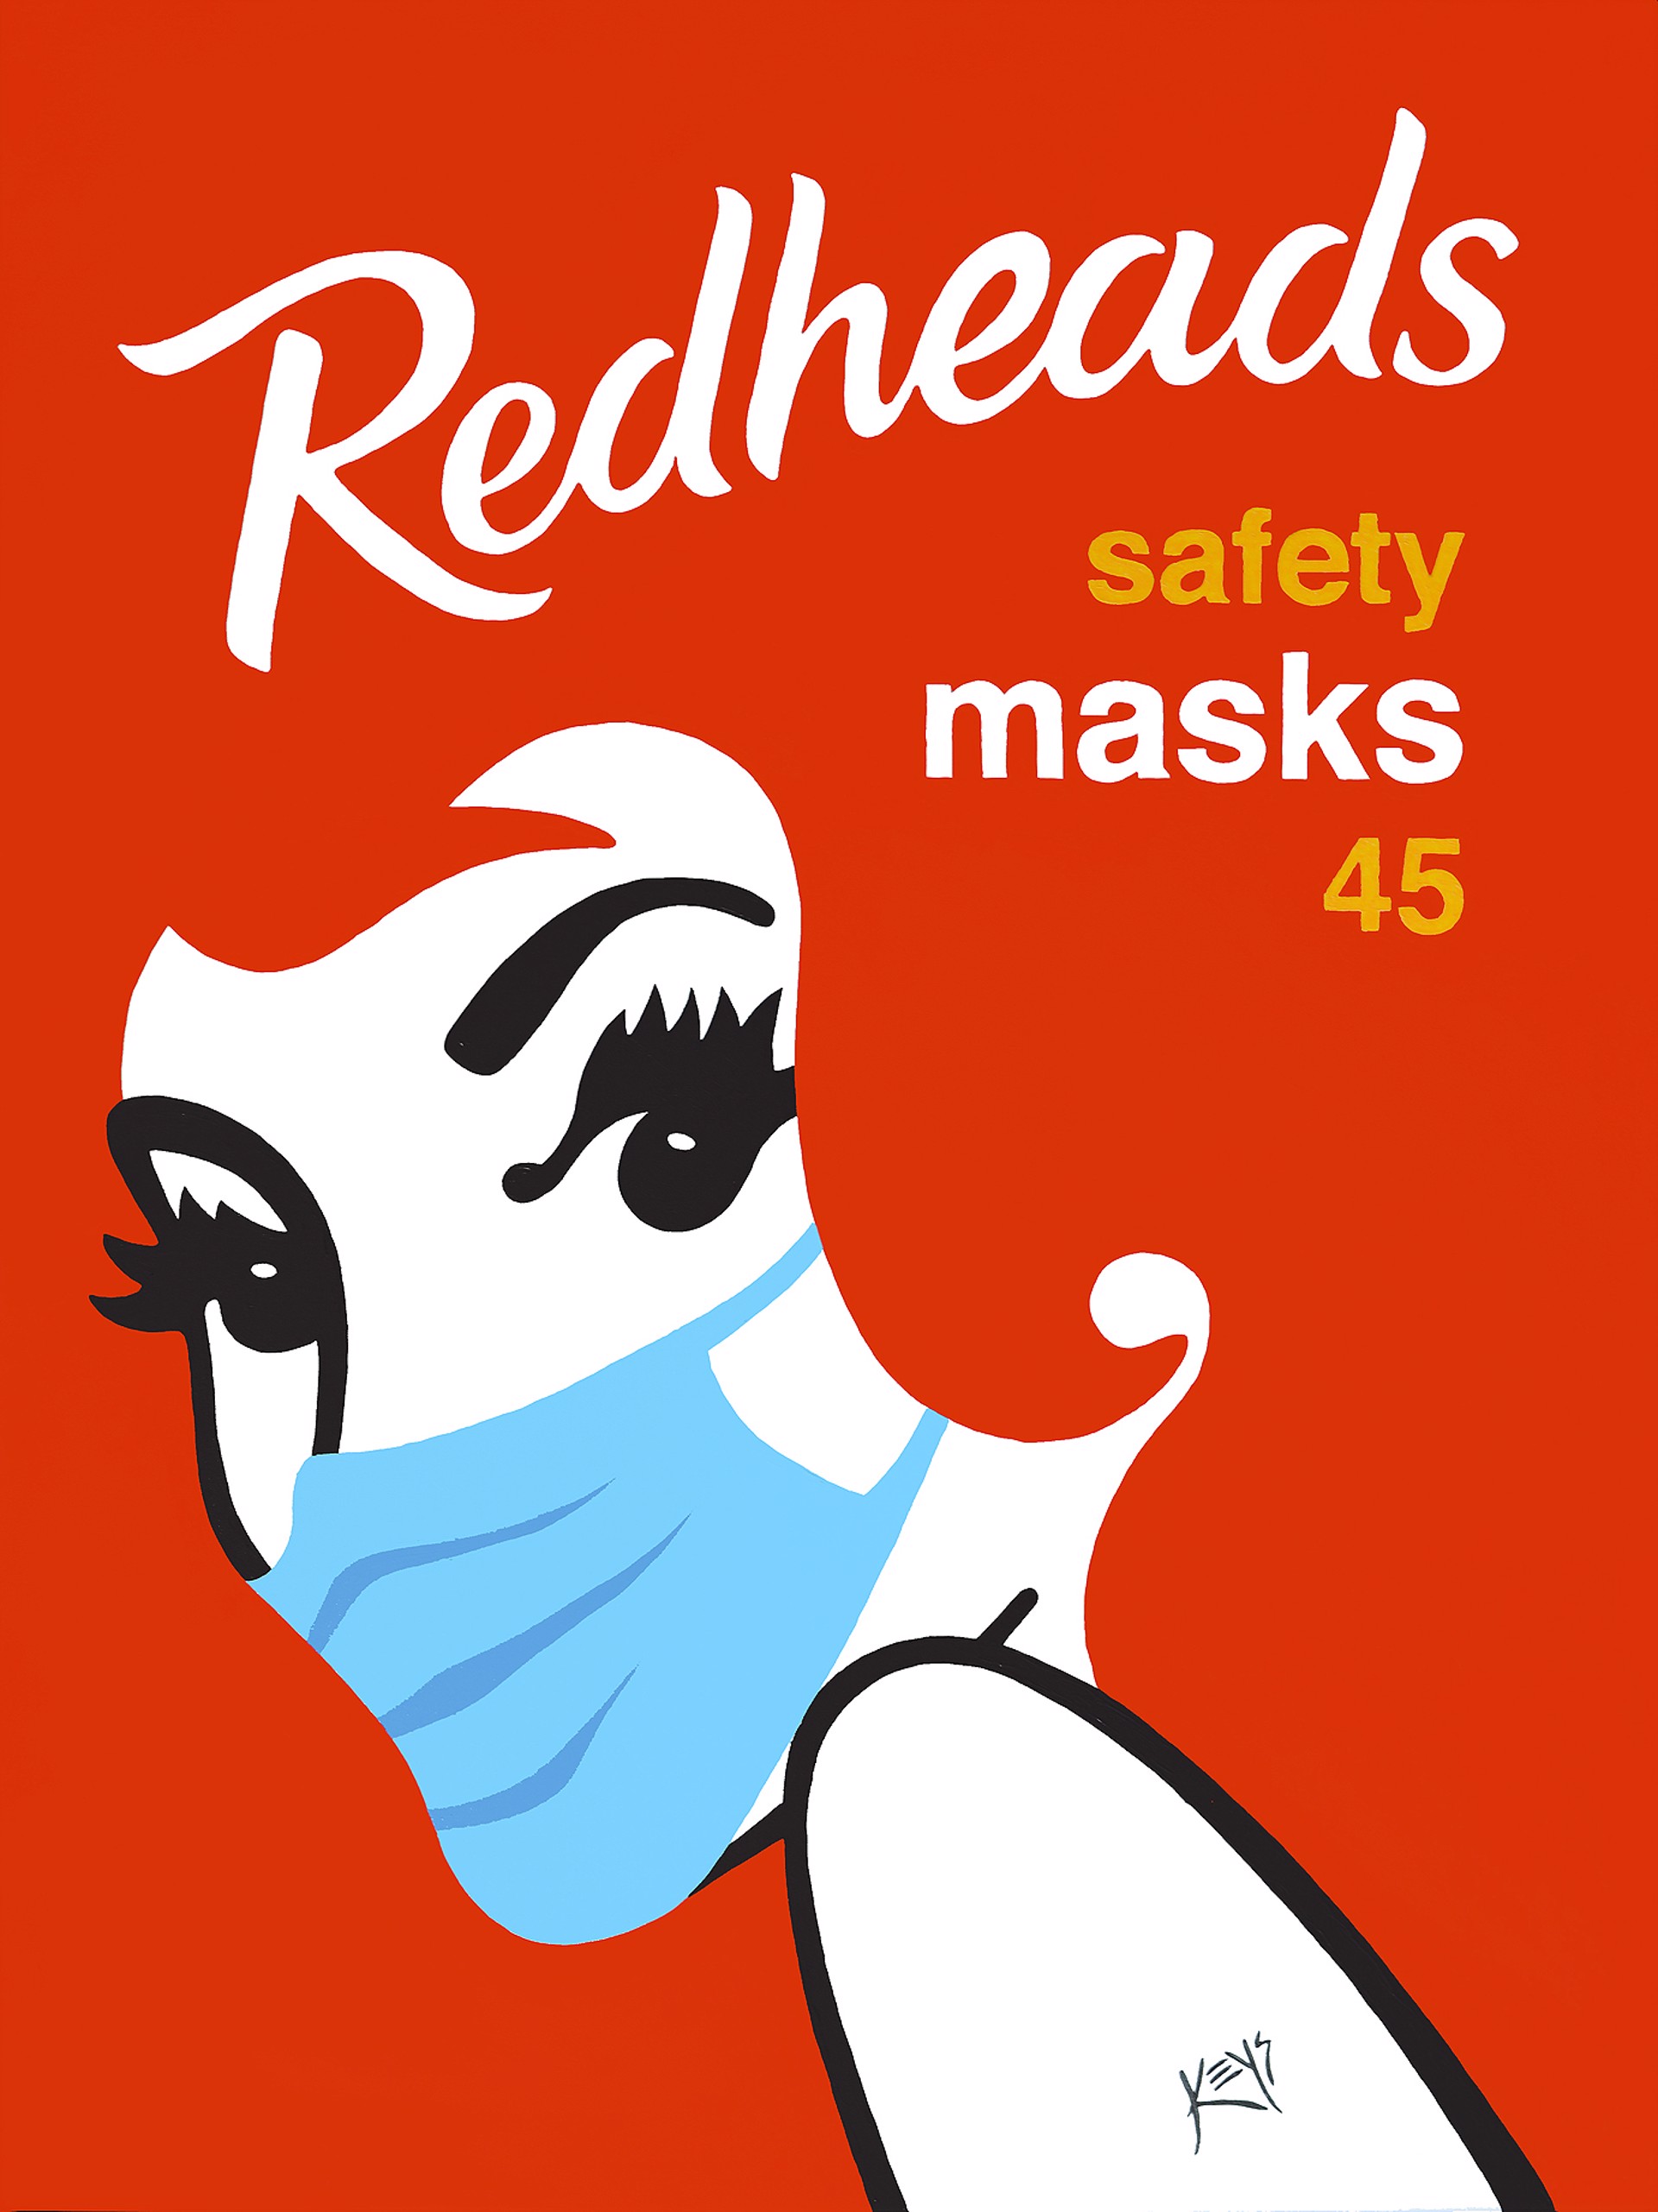 Redheads Safety Masks. by Donald Keys